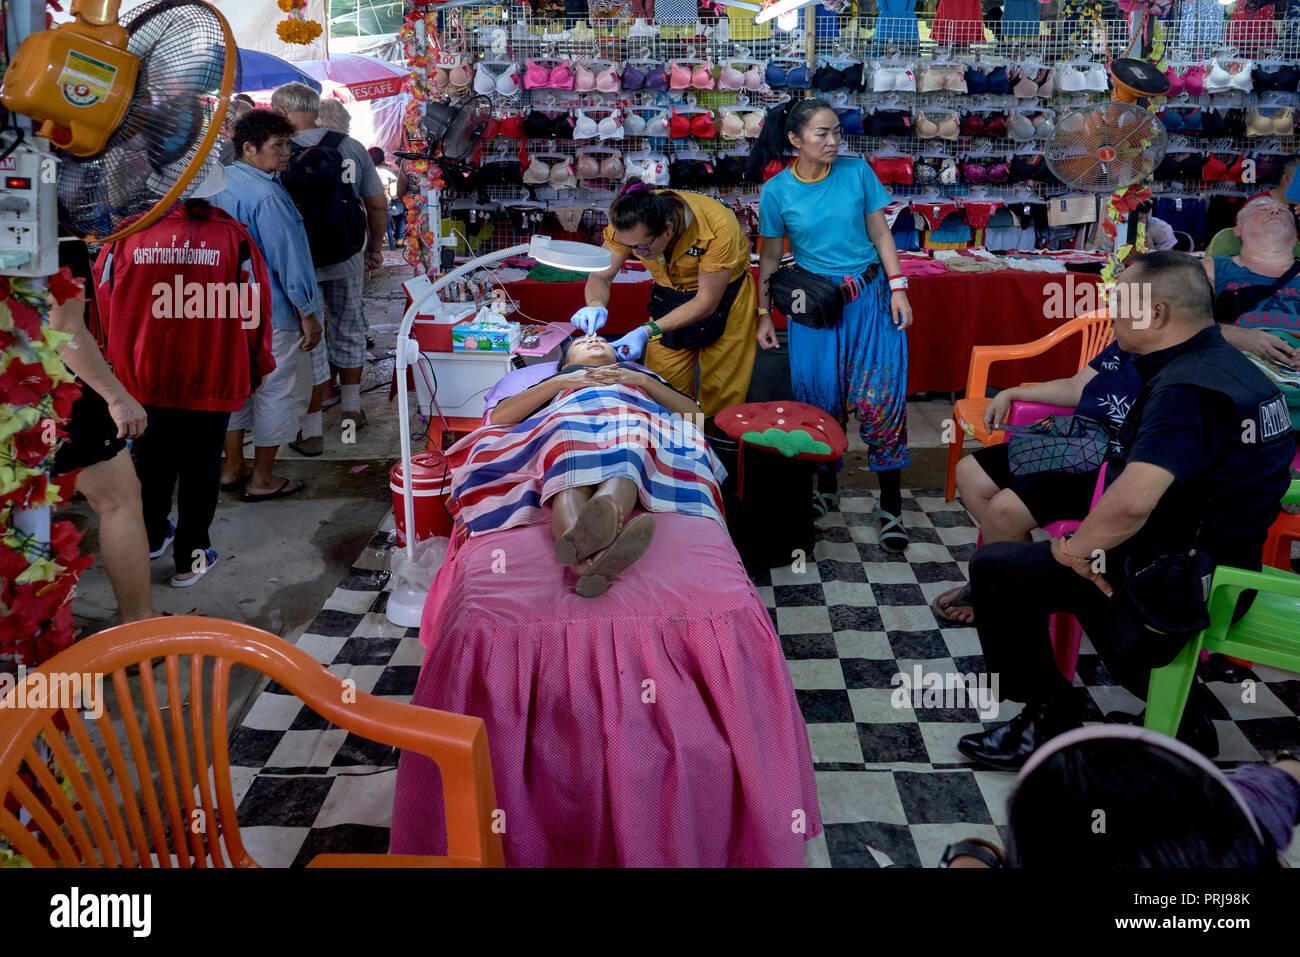 Tatuaggio sopracciglia. Il trattamento di bellezza area della Thailandia il mercato coperto con la donna per ottenere un miglioramento delle sopracciglia tatuaggio. Pattaya. Sud-est asiatico Foto Stock